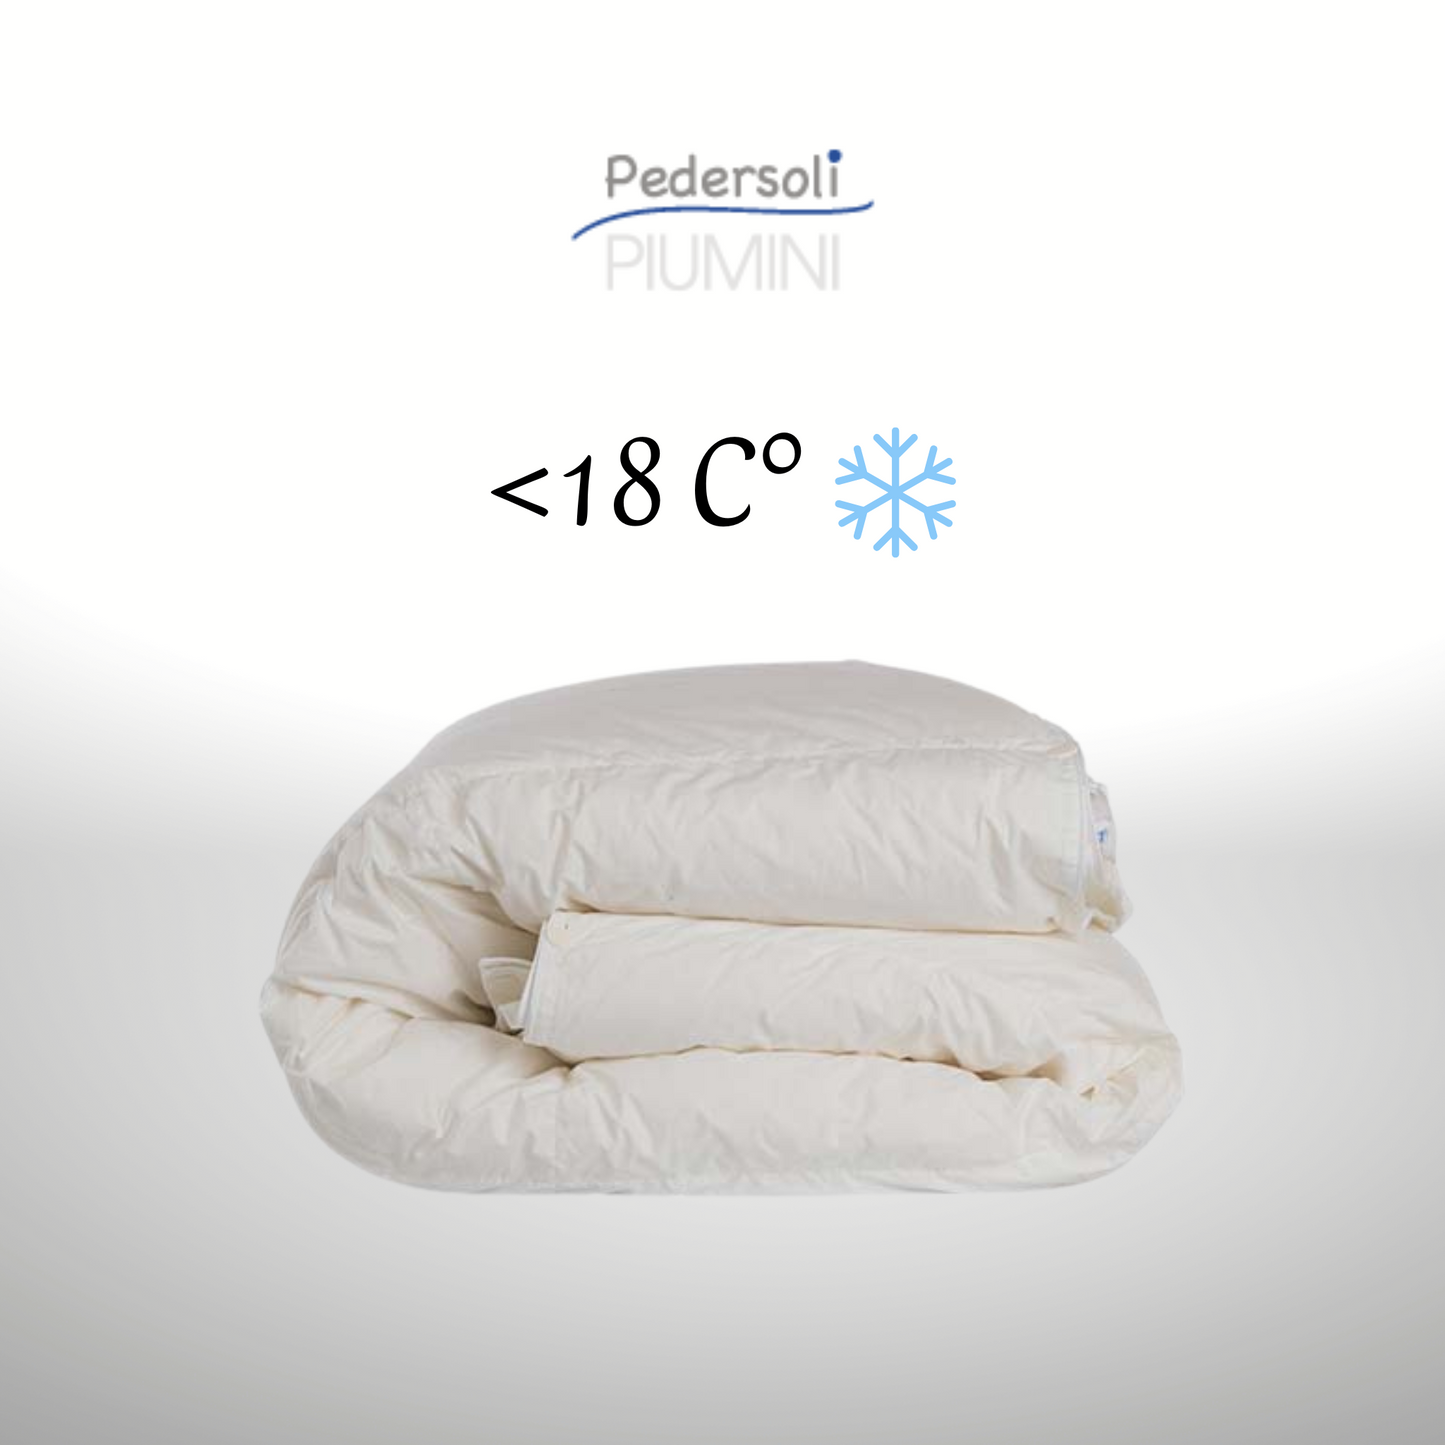 Piumino Superior Protex + Active Cotton Ungheria Invernale Piumini Pedersoli